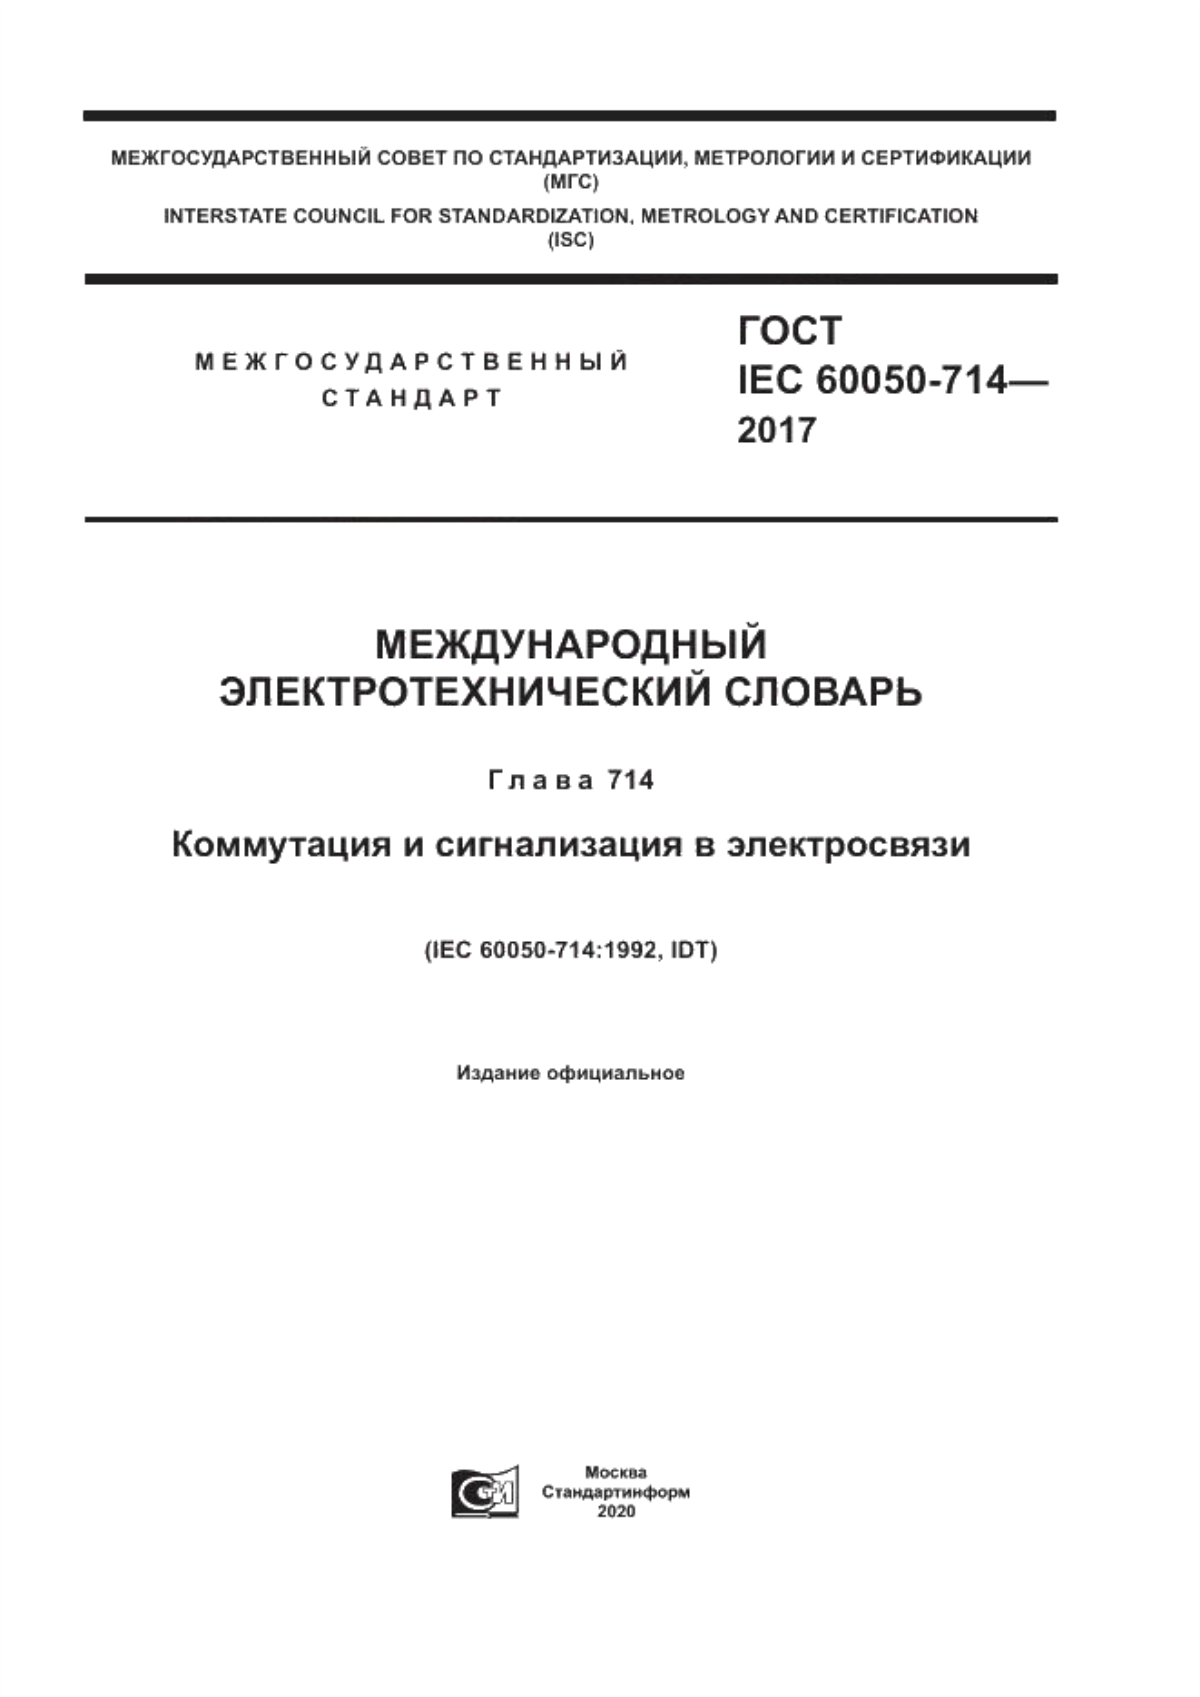 ГОСТ IEC 60050-714-2017 Международный электротехнический словарь. Глава 714. Коммутация и сигнализация в электросвязи